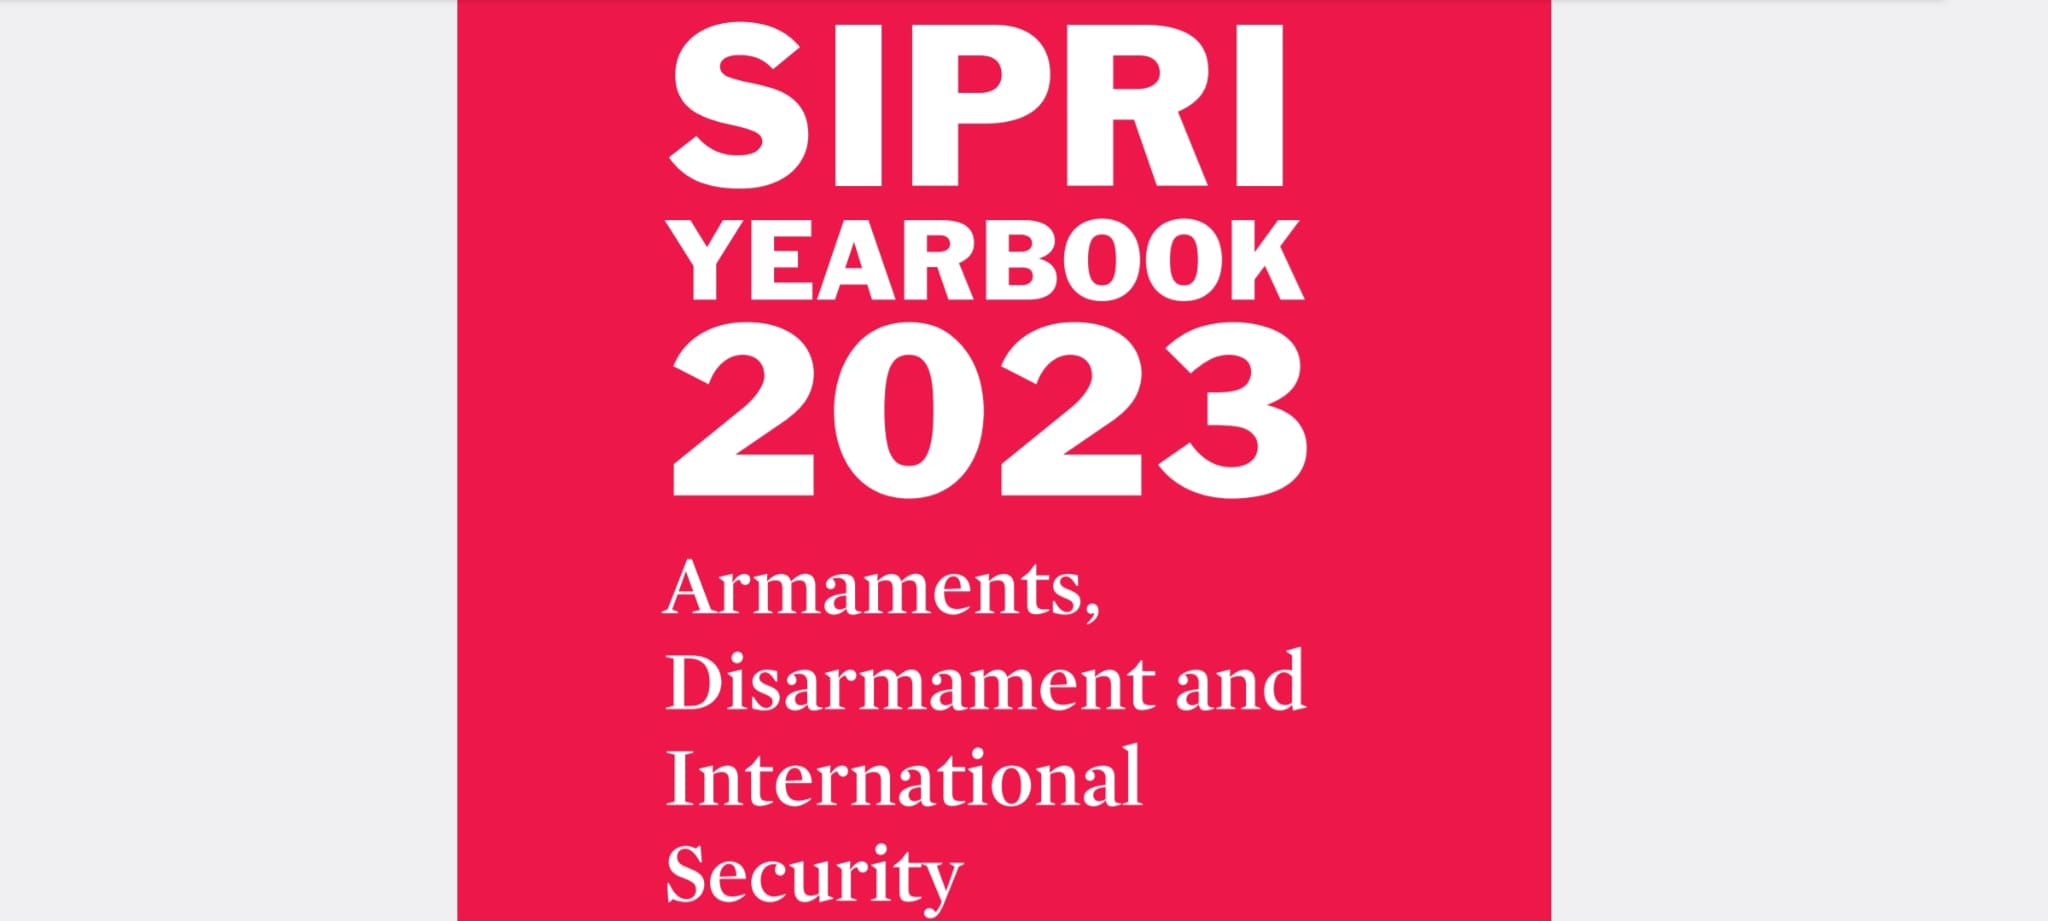 Aumento del Militarismo e Inseguridad Mundial. SIPRI 2023.